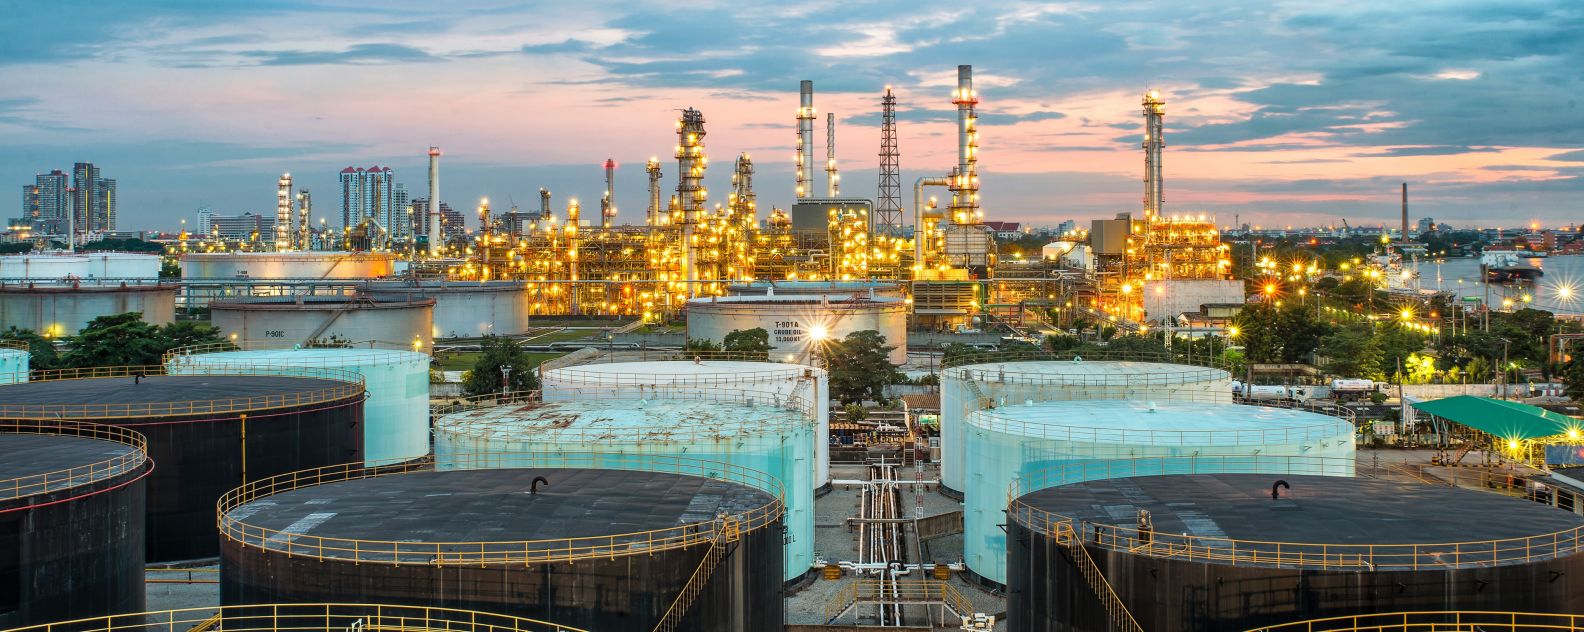 Foto aerea di una raffineria di petrolio